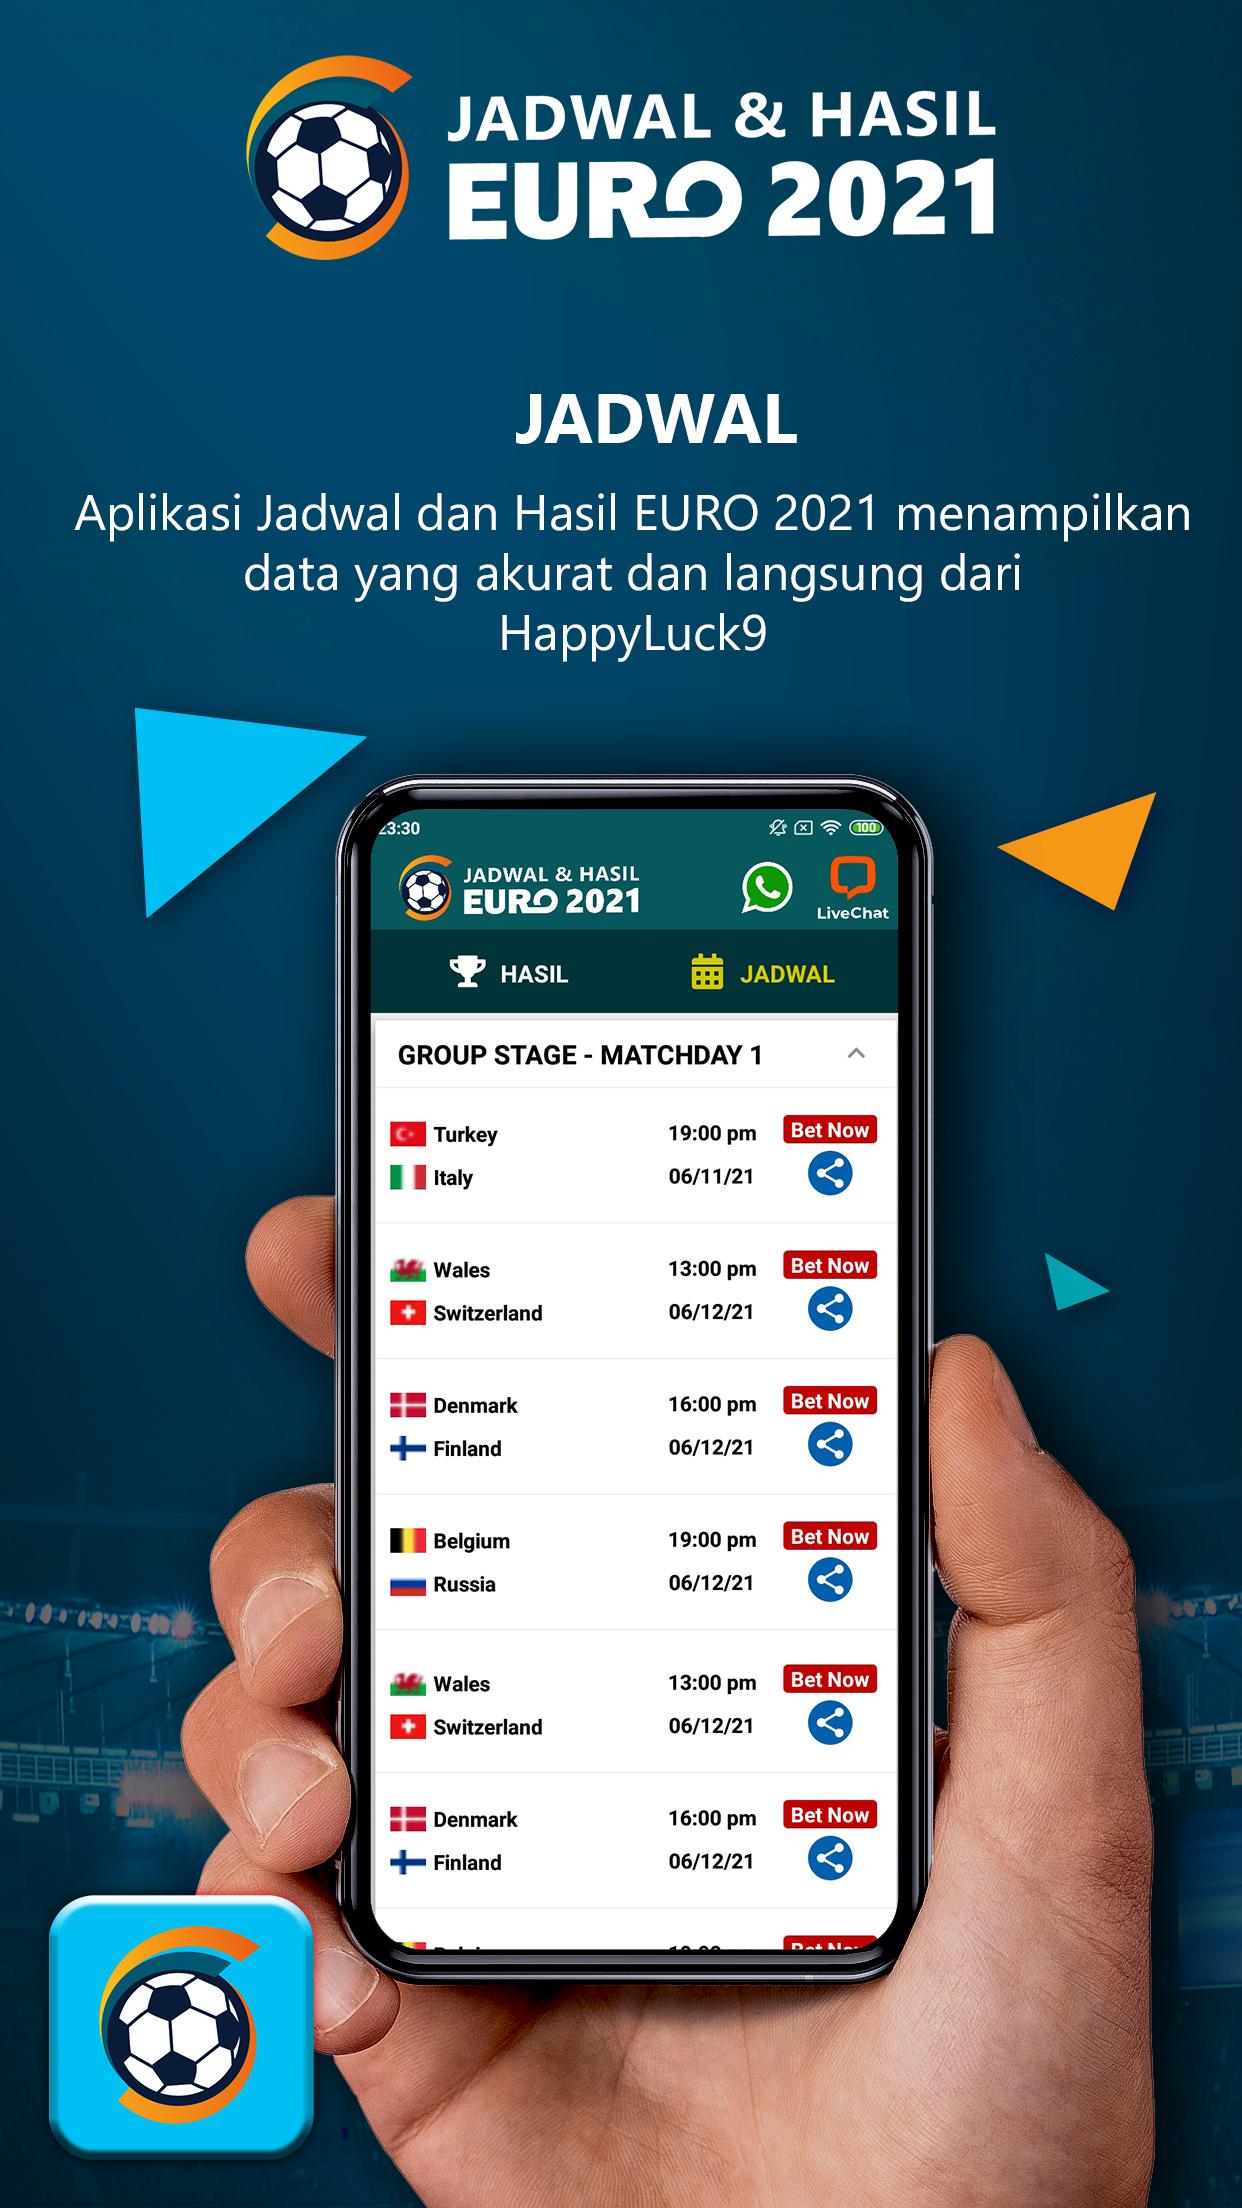 Jadwal & Hasil EURO 2021 1.0.8 Screenshot 6